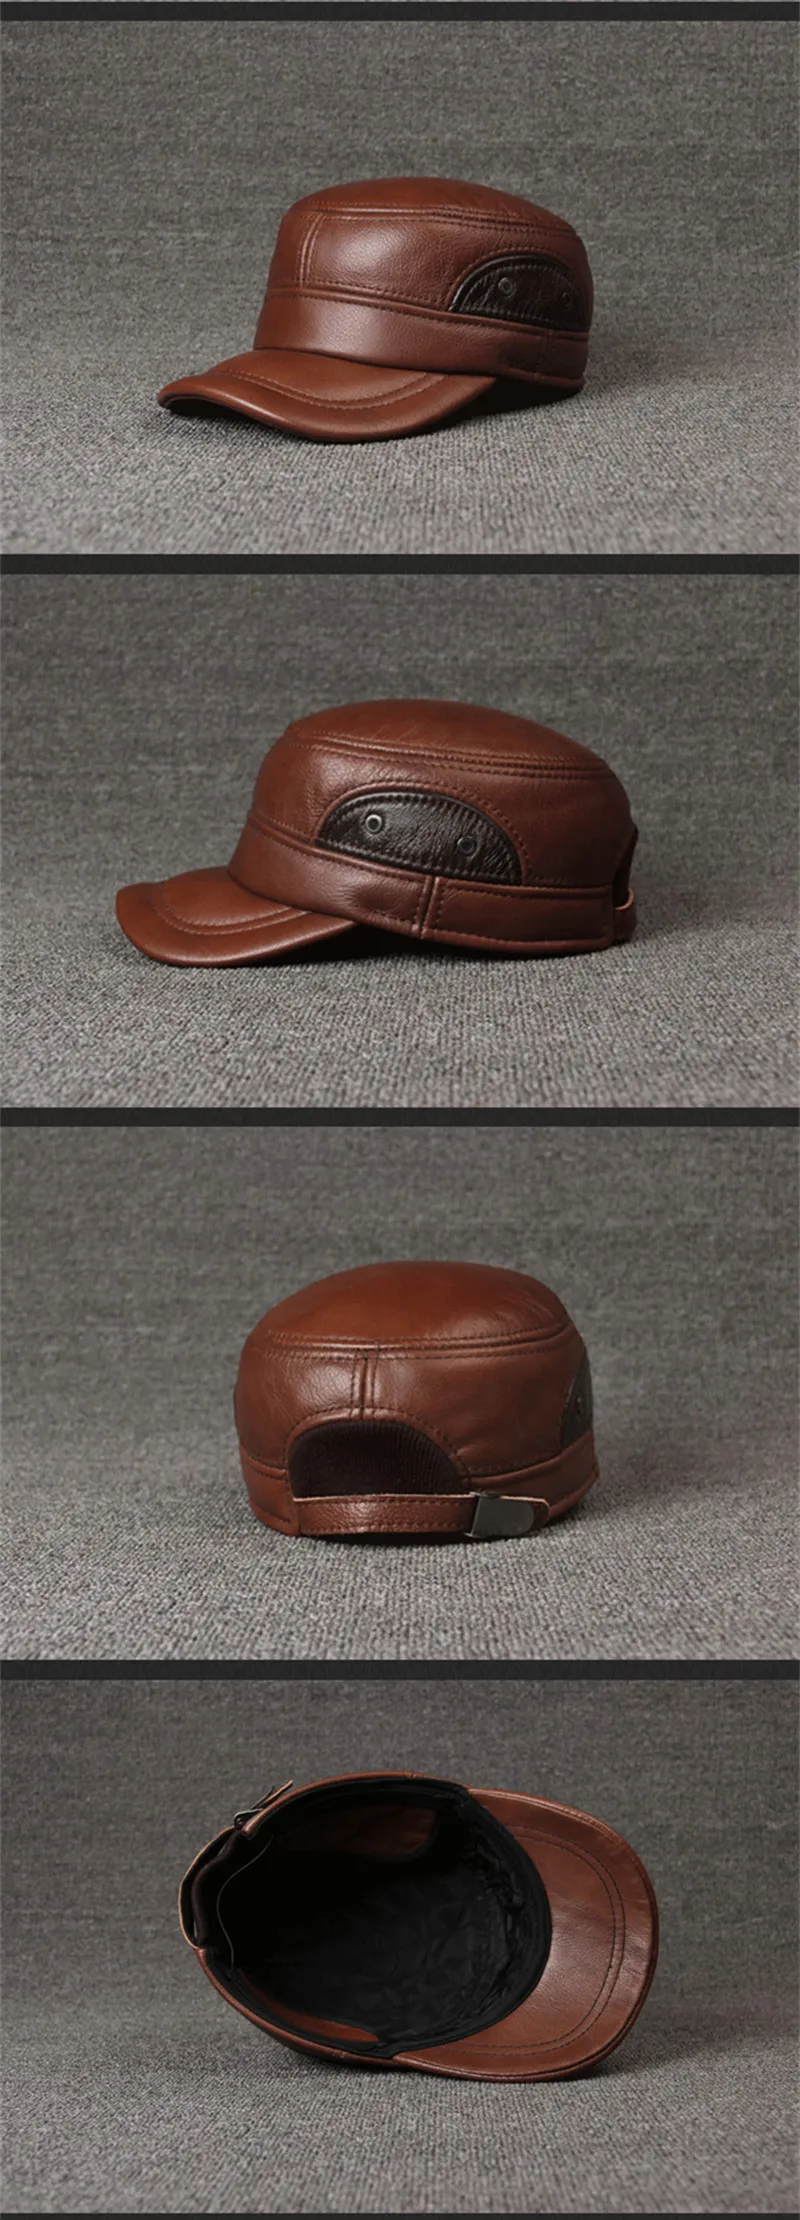 SILOQIN мужская плоская шляпа из натуральной кожи осень зима модная воловья брендовая военная шляпа наушники для отдыха регулируемая бейсболка